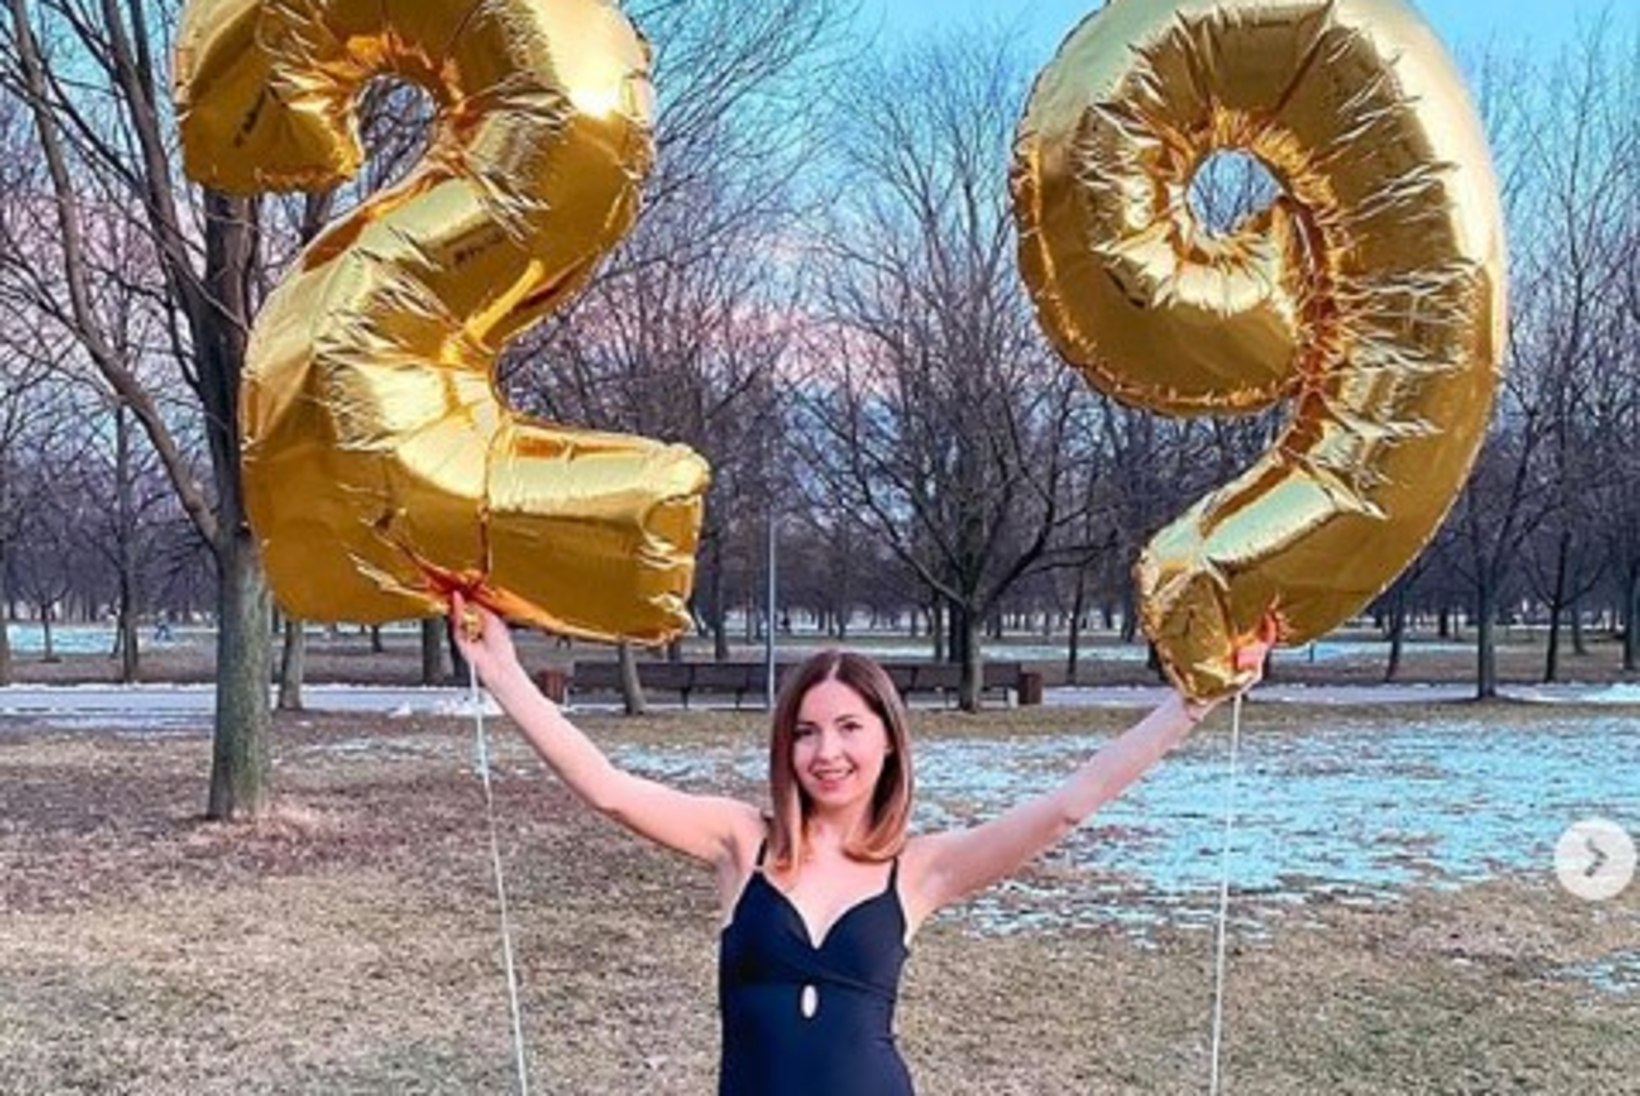 Vene instagrammeri sünnipäeval lämbus 3 inimest, sealhulgas tema abikaasa